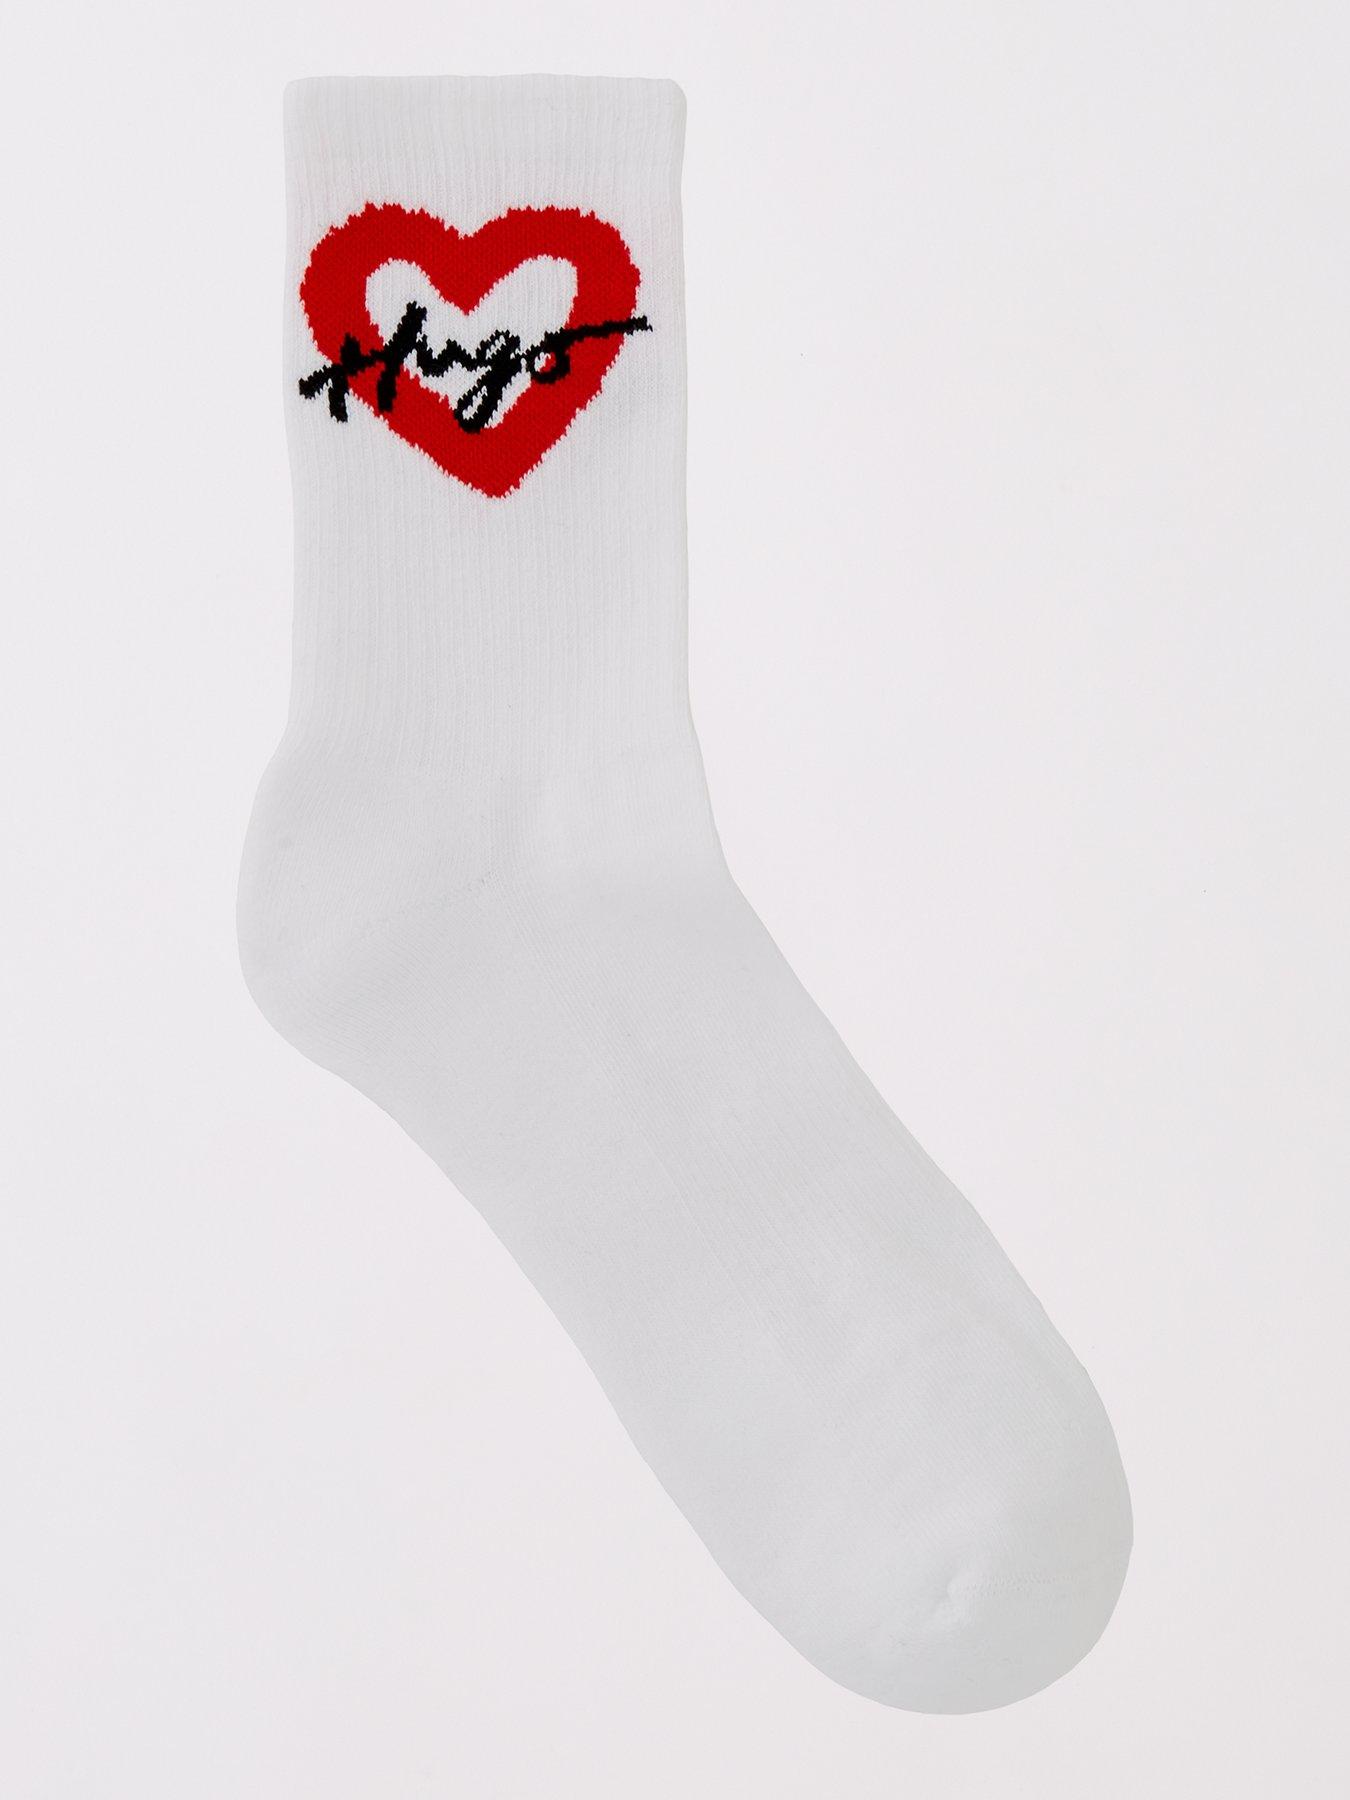 Kate Spade 3 Pack Heart Trouser Socks, Posy Red